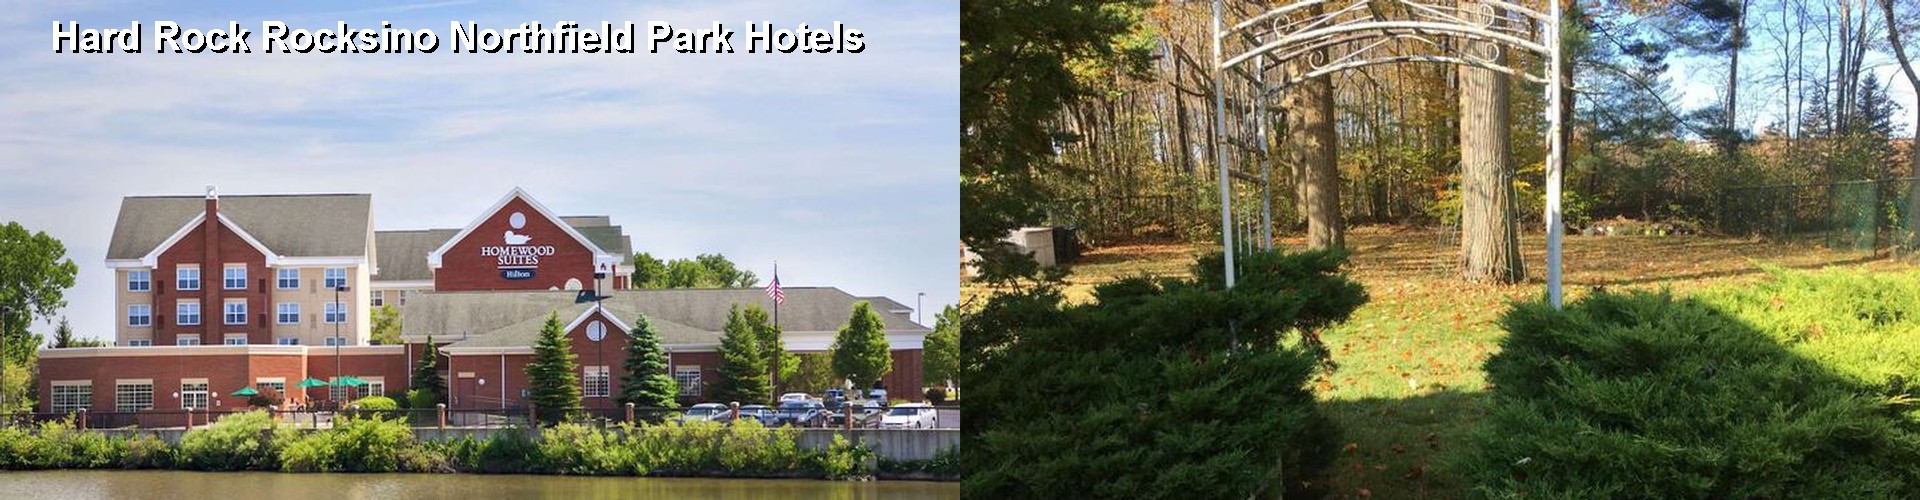 4 Best Hotels near Hard Rock Rocksino Northfield Park